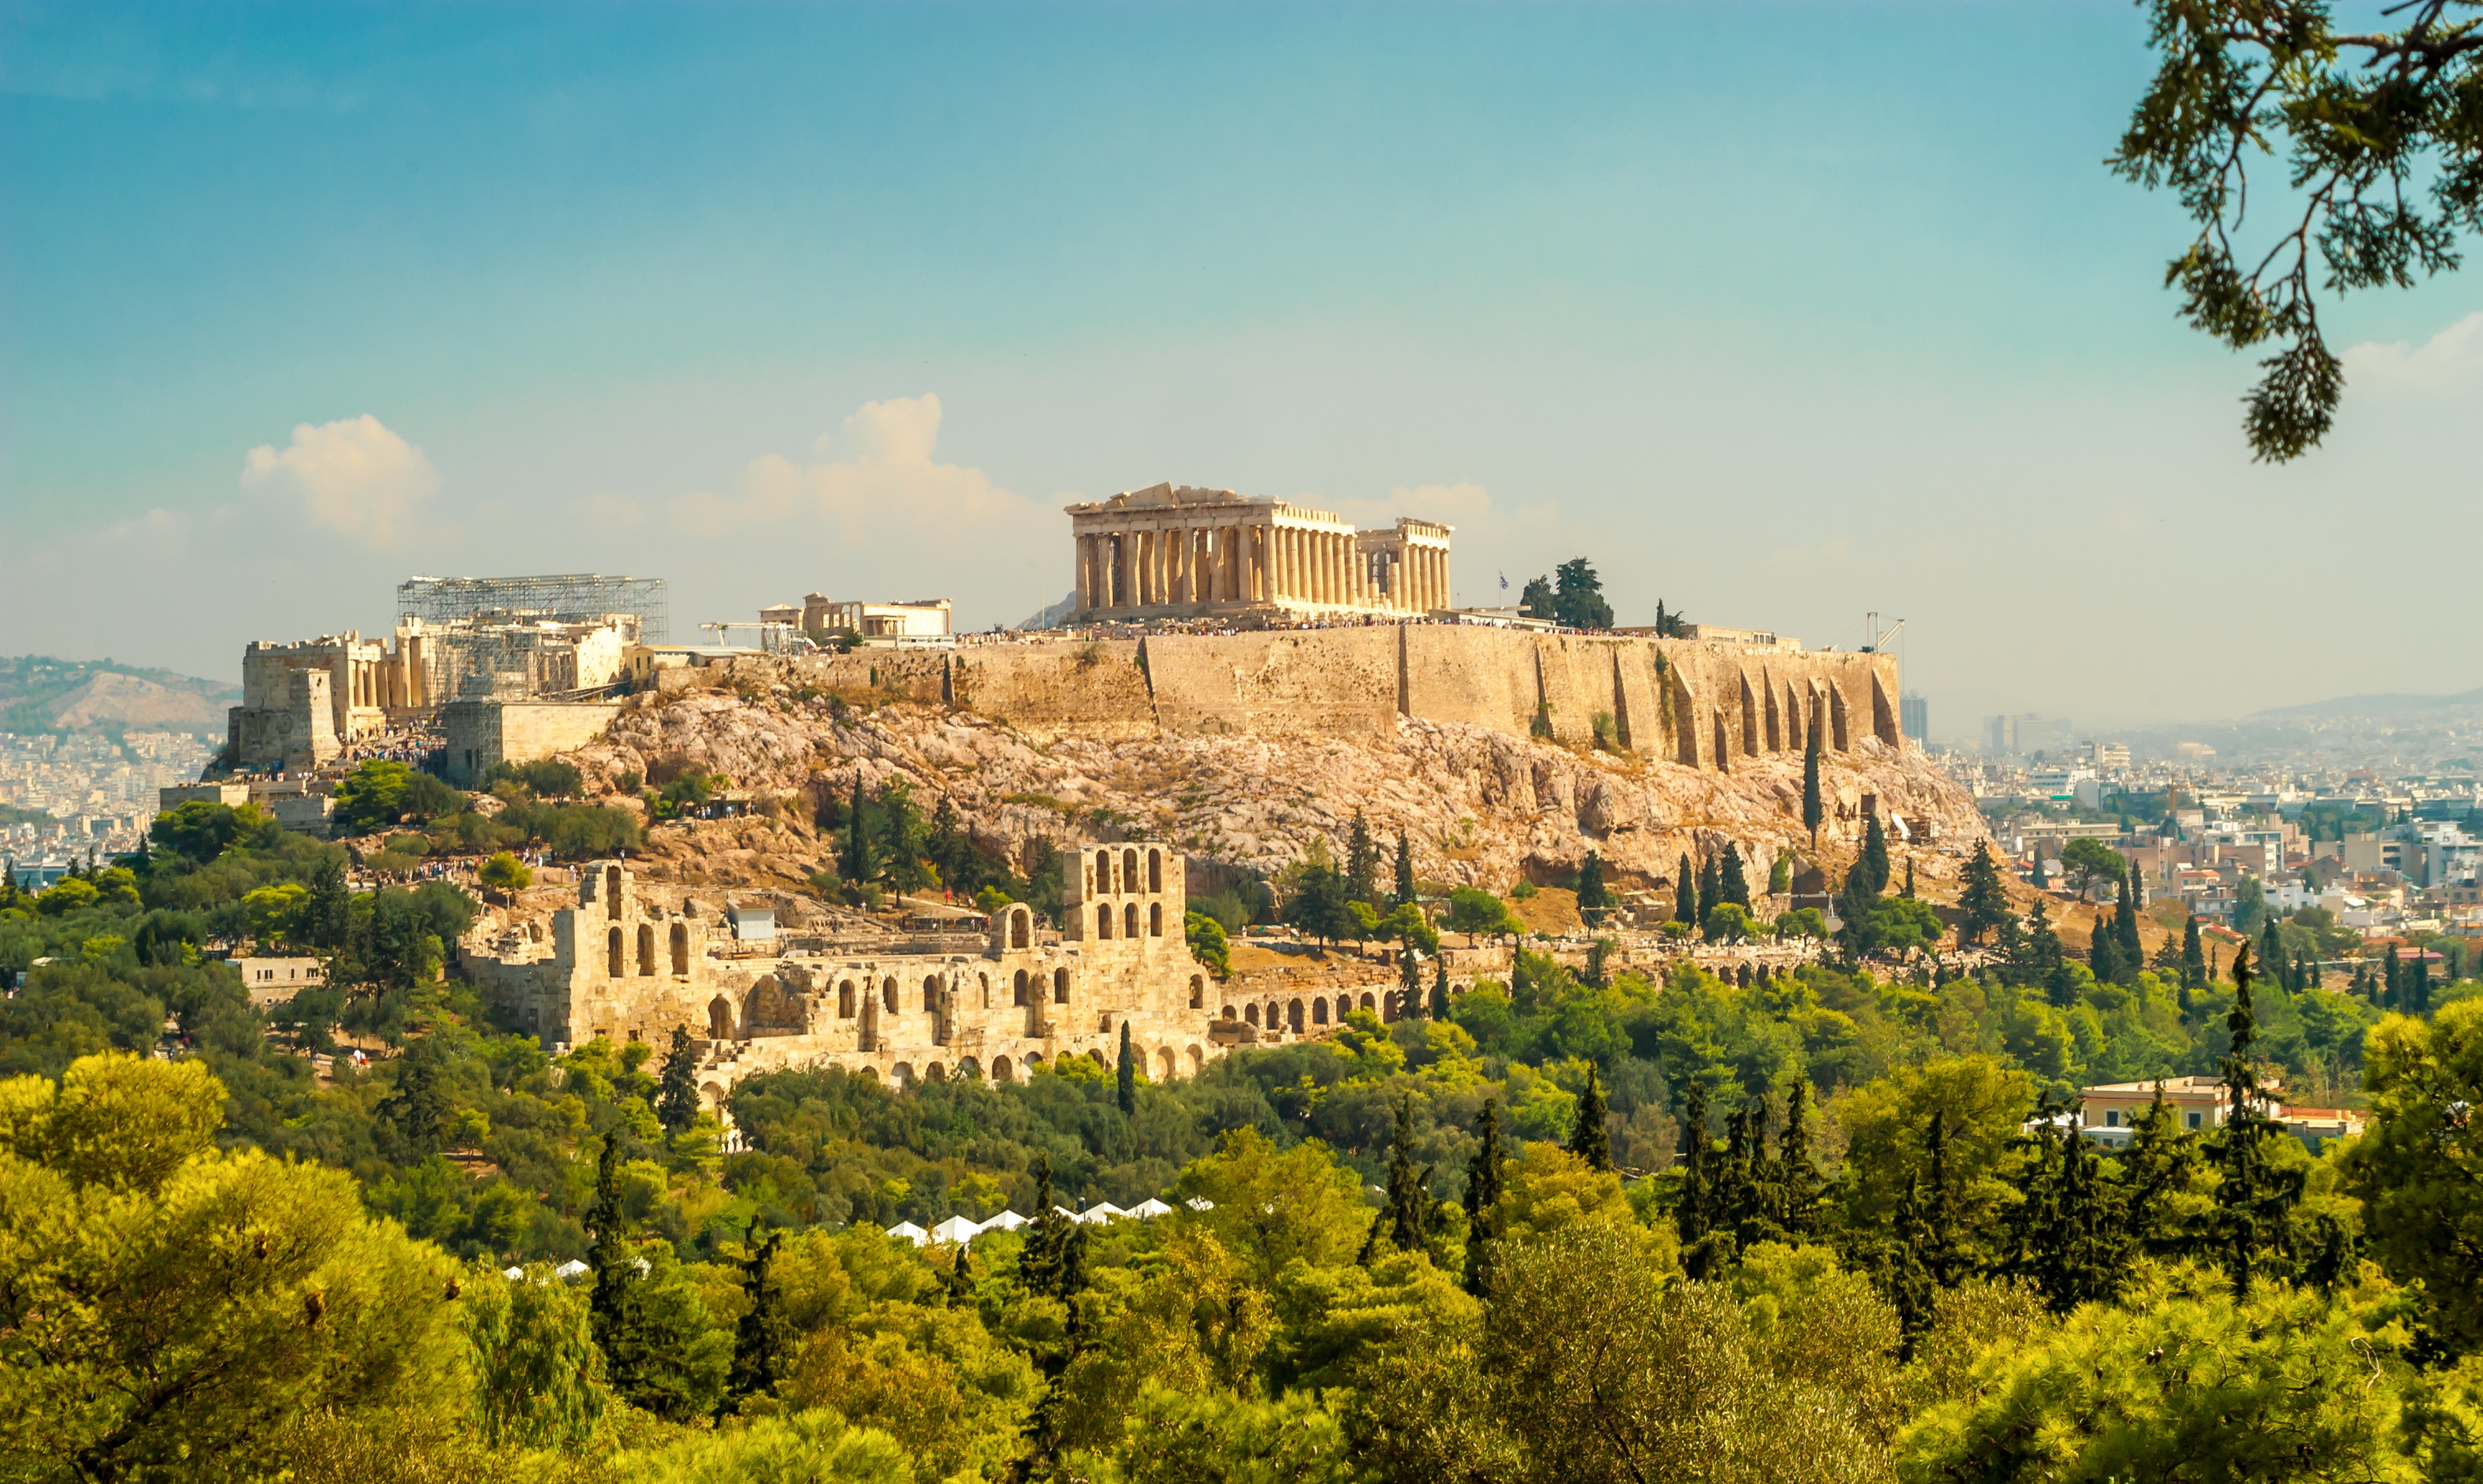 L'Acropole d'Athènes abrite de nombreux bâtiments célèbres, comme le Parthénon, les Propylées, le temple d’Athéna Nikè et l'Érechthéion. En 2012, une vaste campagne de restauration a été lancée. © milosk50, Adobe Stock